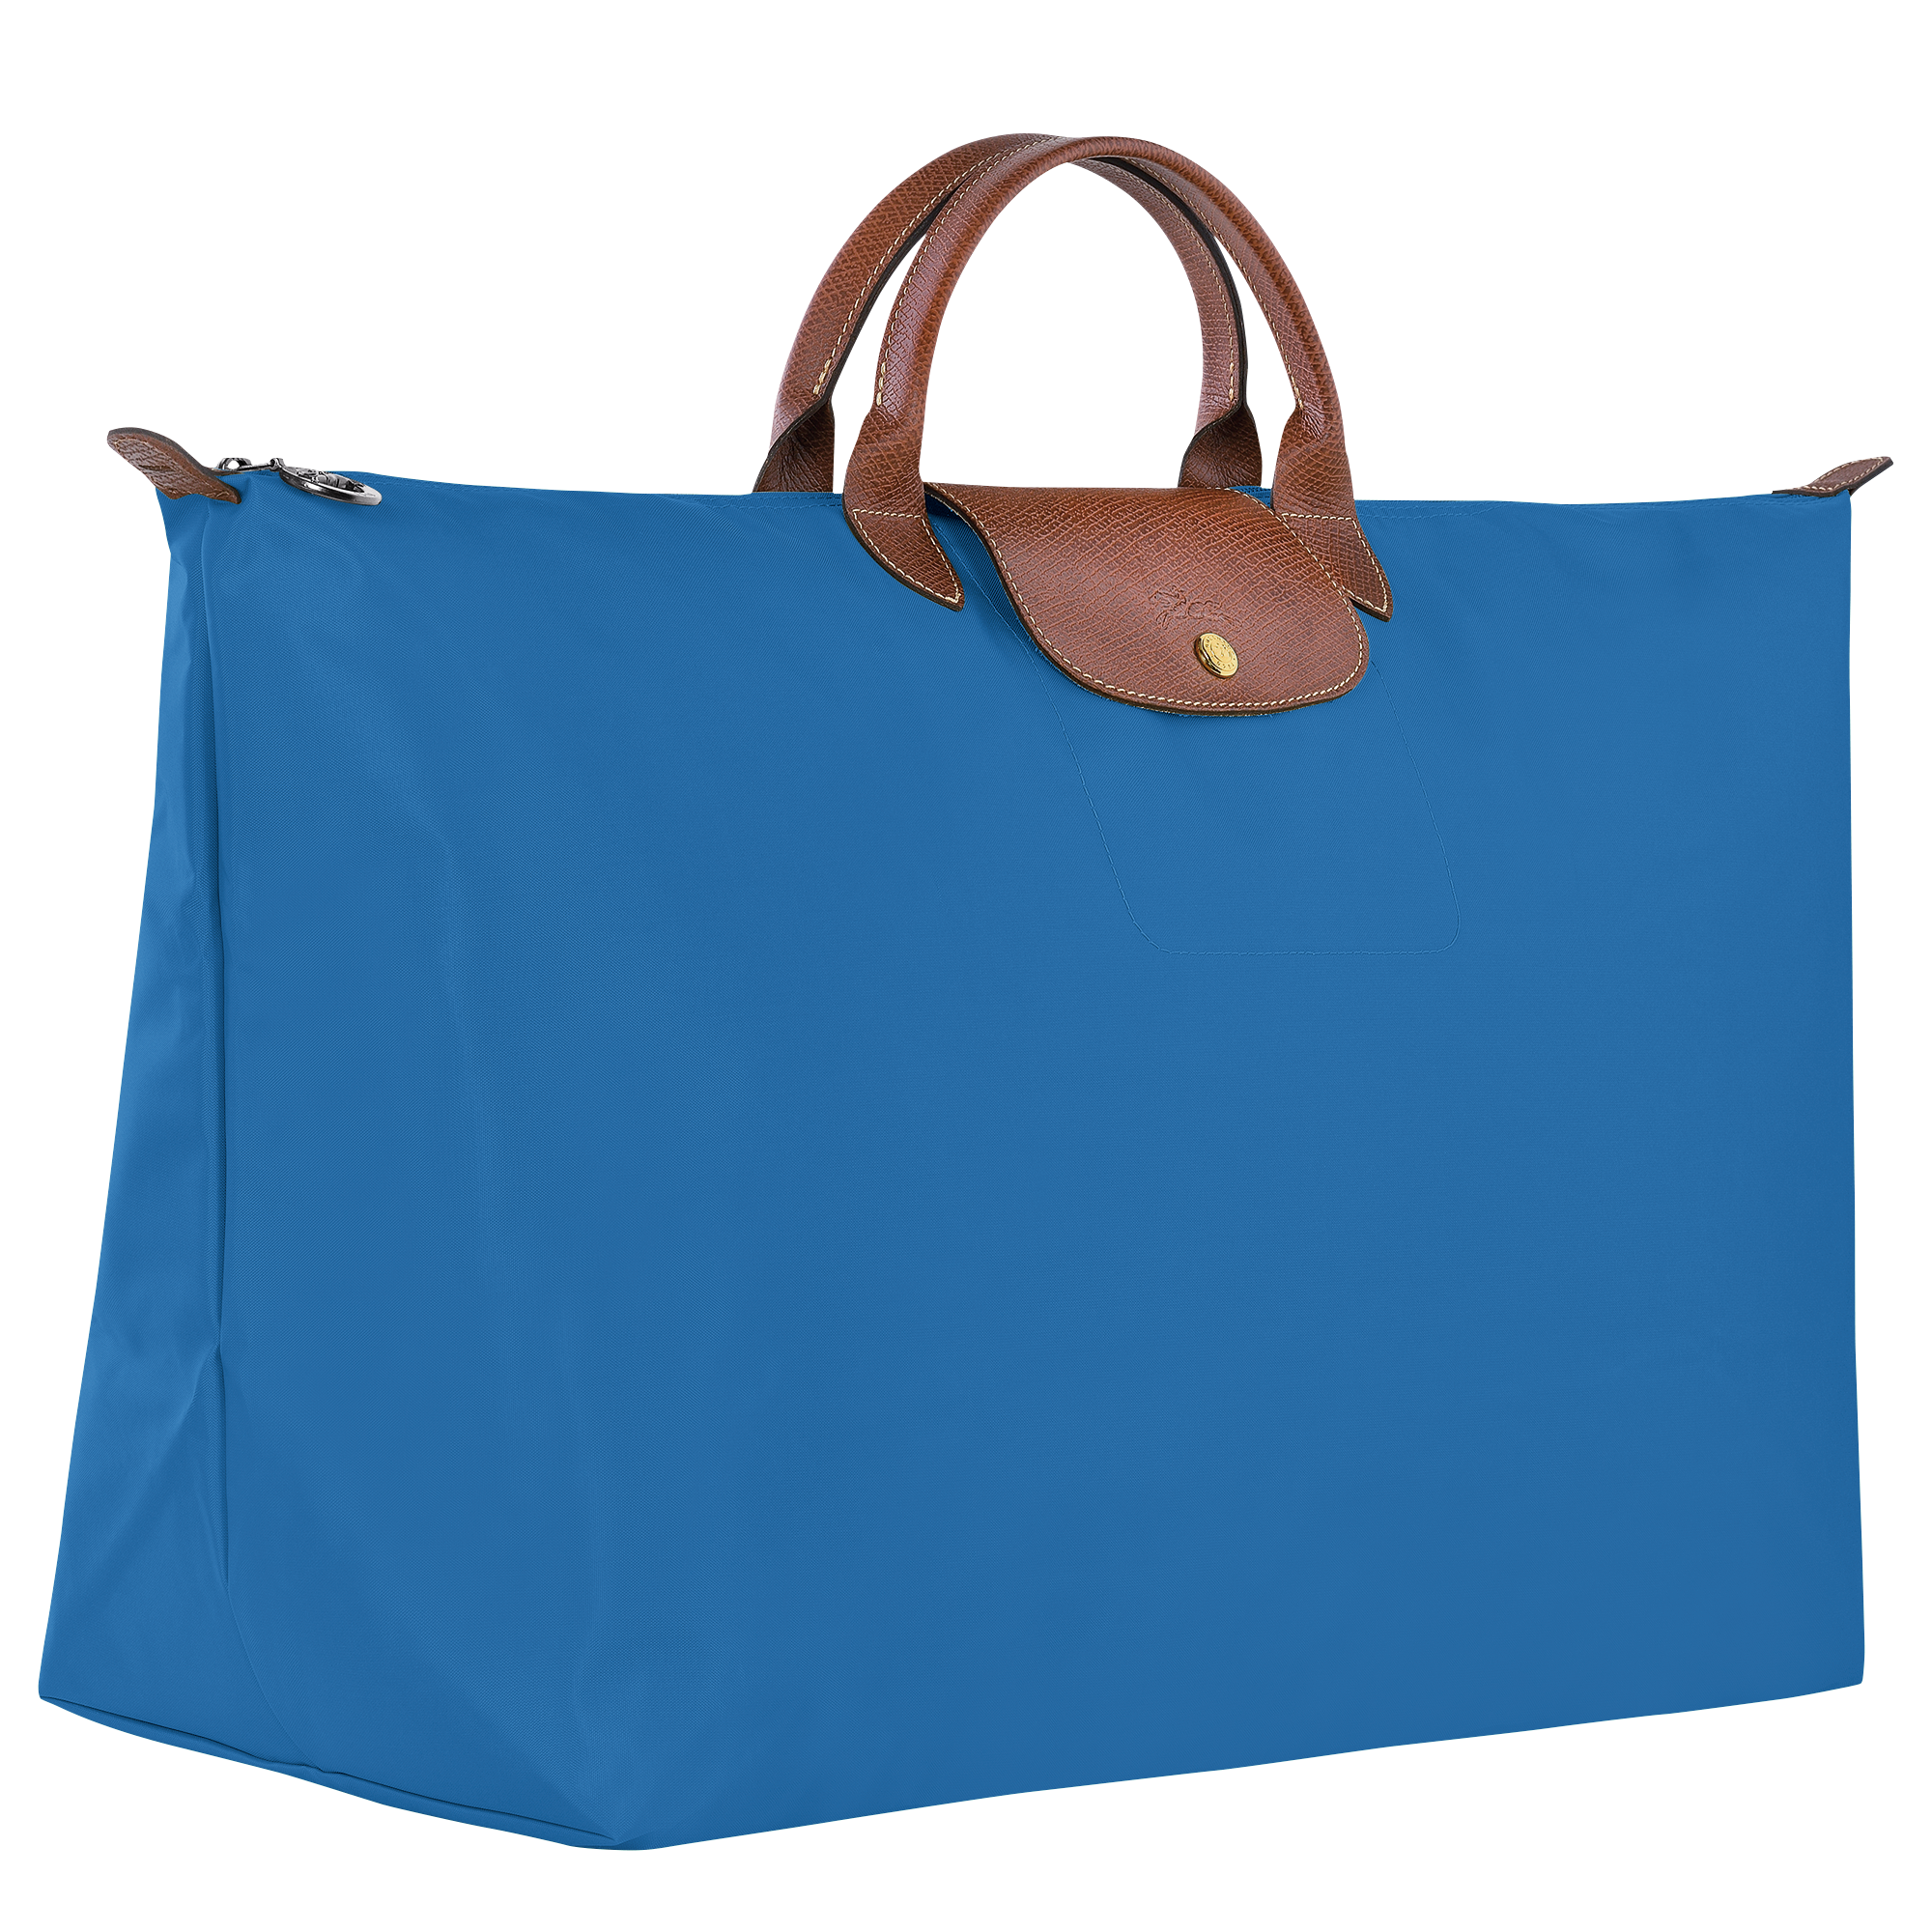 Le Pliage Original 旅行袋 M, 鈷藍色